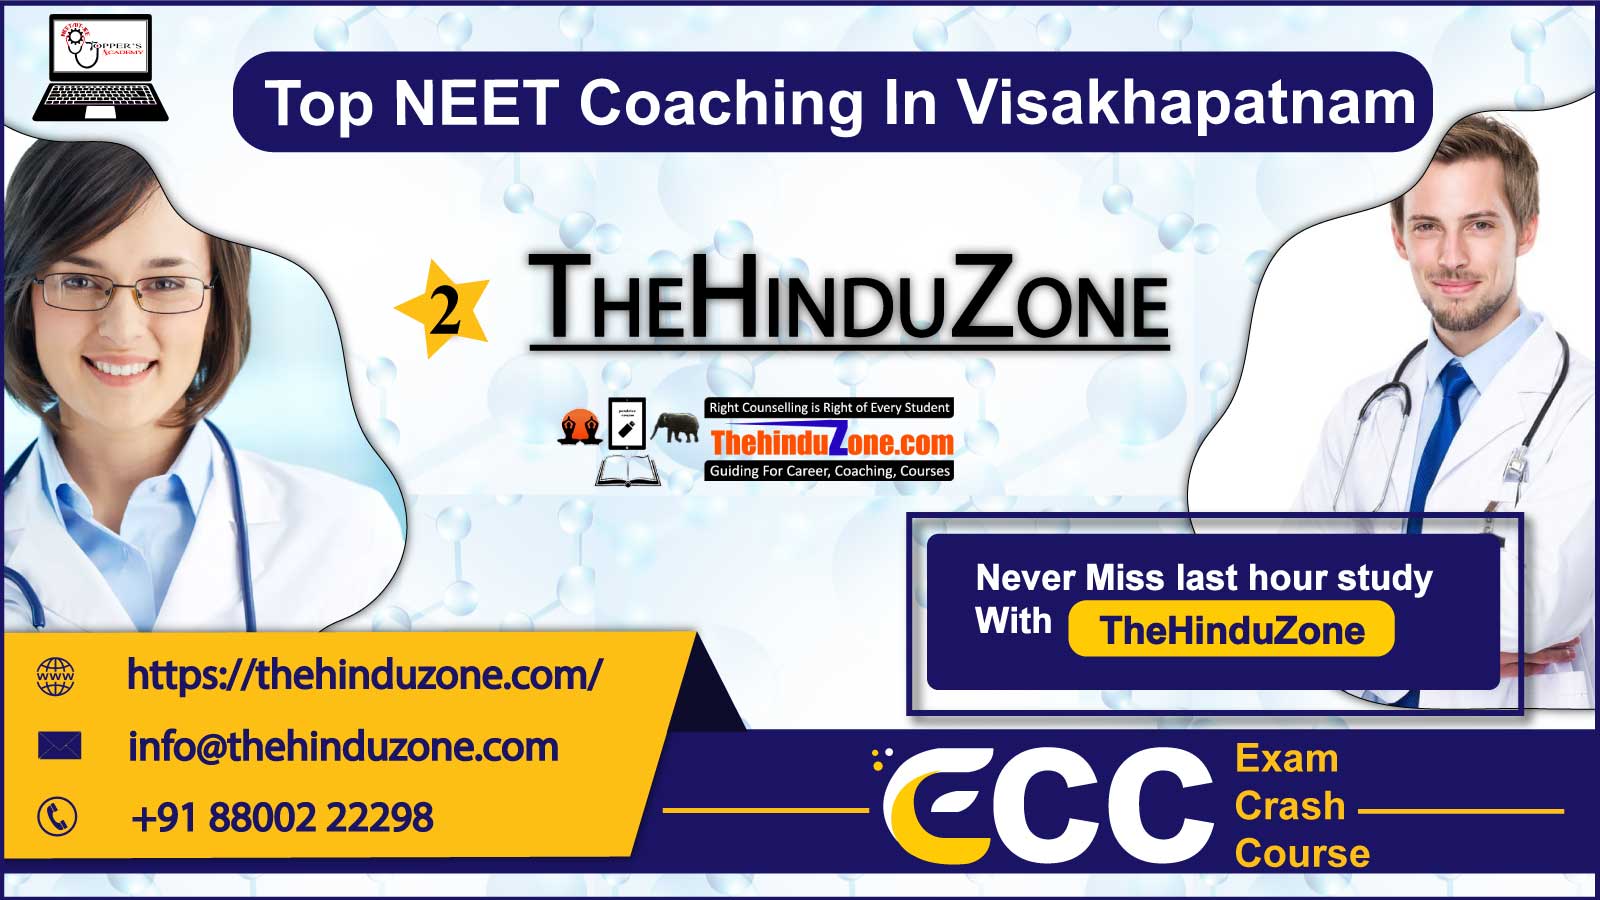 The Hinduzone NEET Coaching in Visakhapatnam